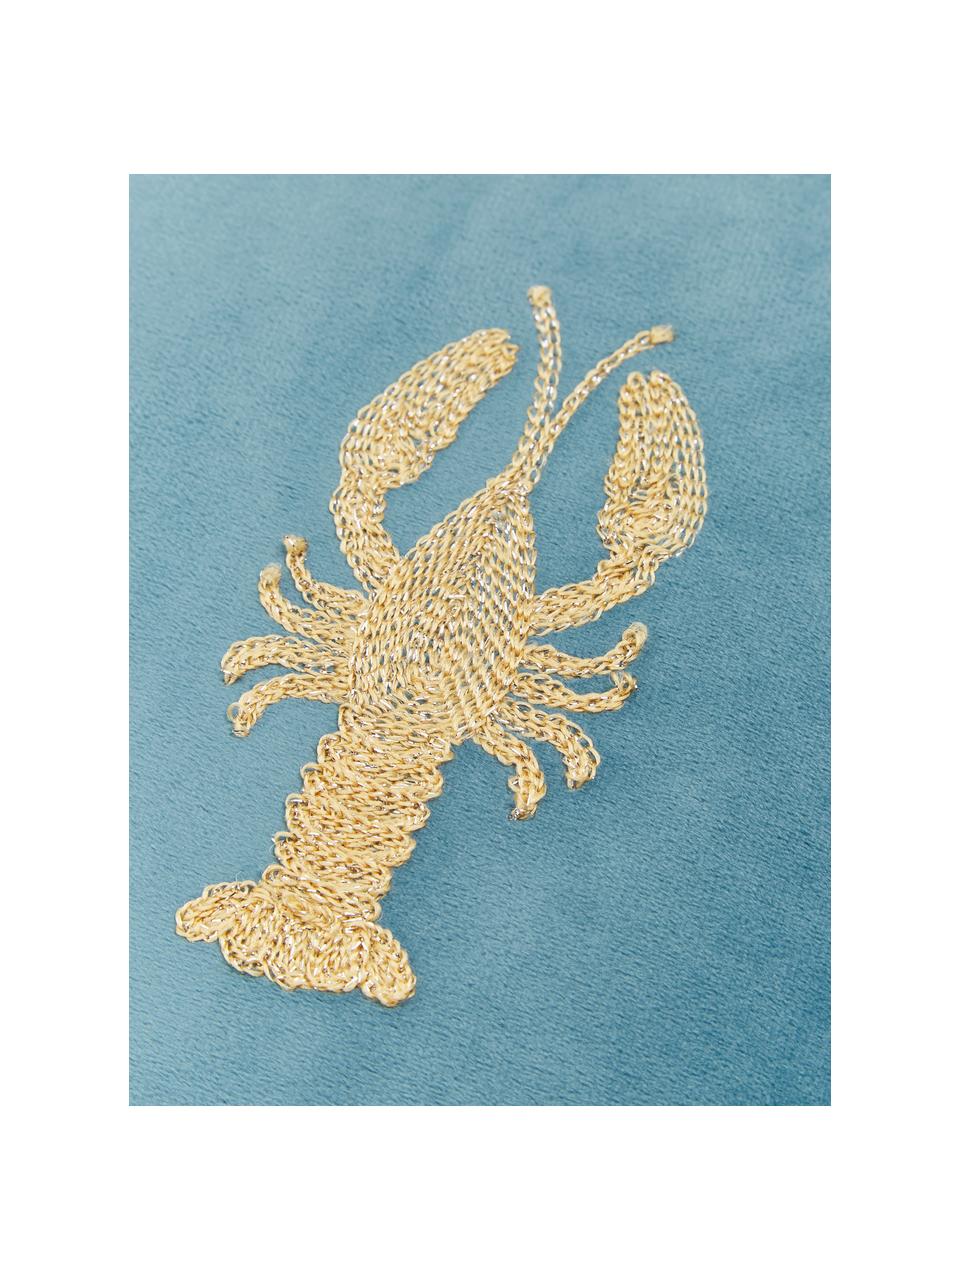 Coussin en velours brodé Lobster, 100 % velours

Veuillez considérer que la couleur du velours paraît plus claire ou plus foncée en fonction de la source lumineuse et de l'orientation des fibres, Bleu, couleur dorée, larg. 45 x long. 45 cm